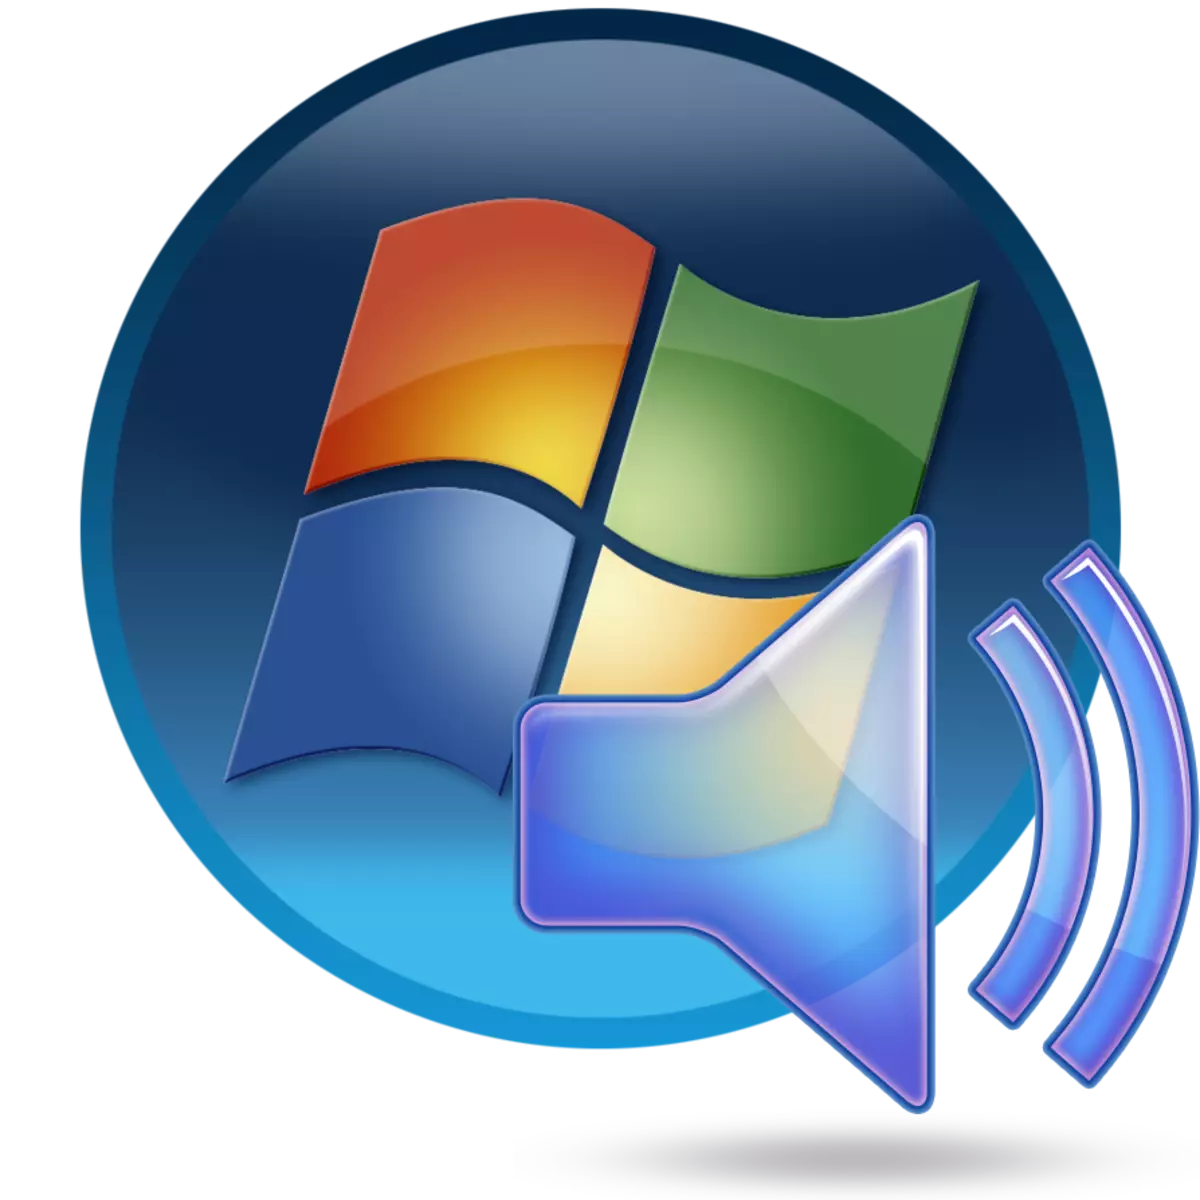 Fametrahana fitaovana fanamafisam-peo amin'ny PC misy Windows 7